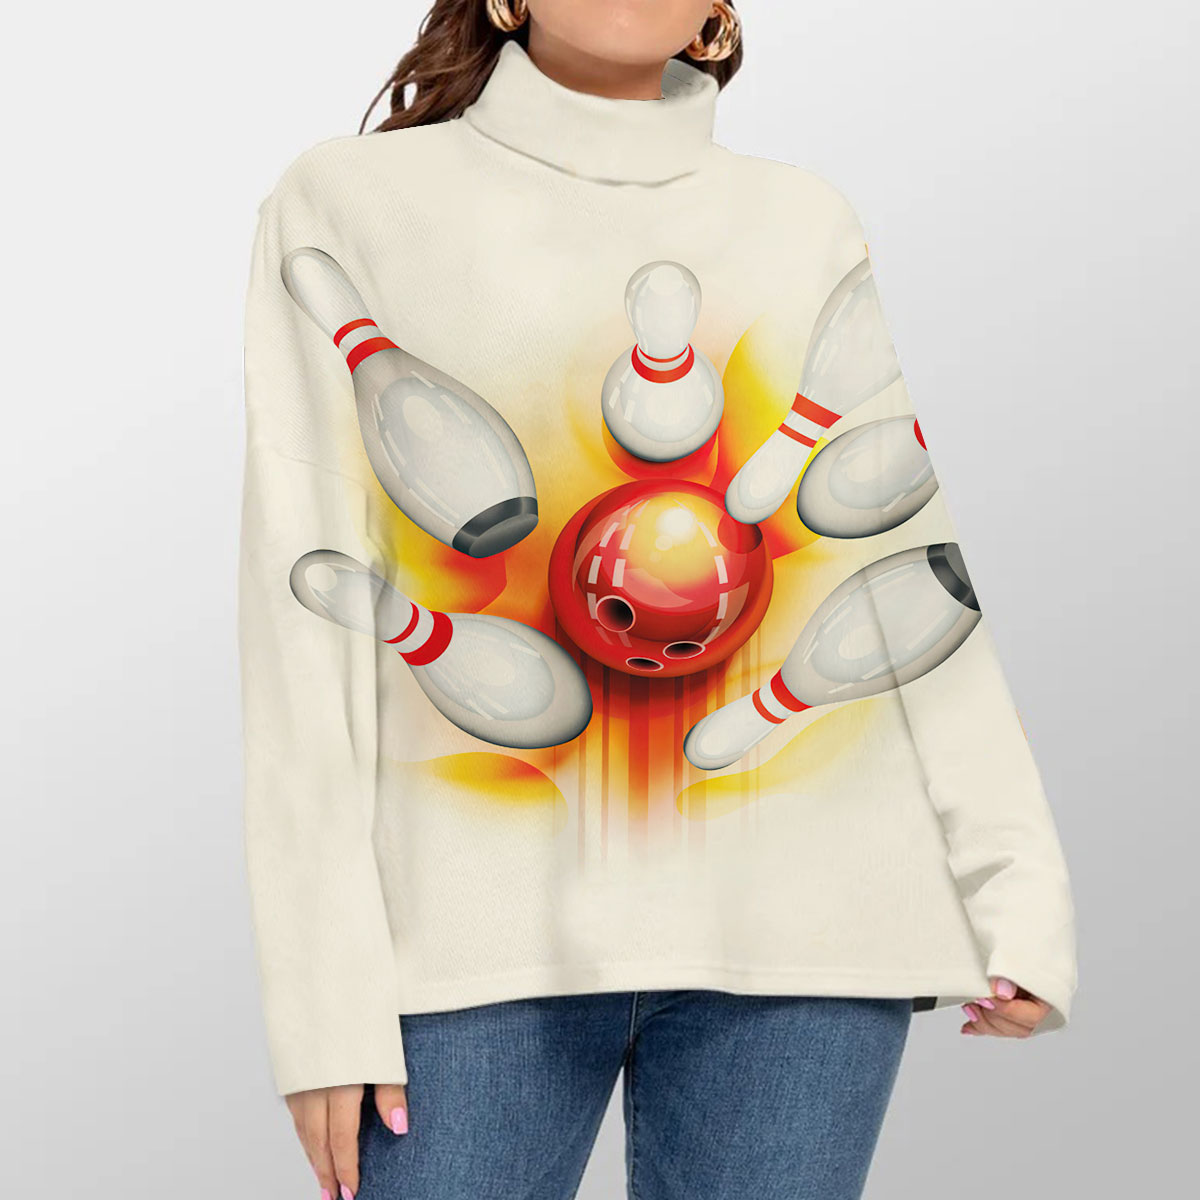 Orange Bowling Turtleneck Sweater